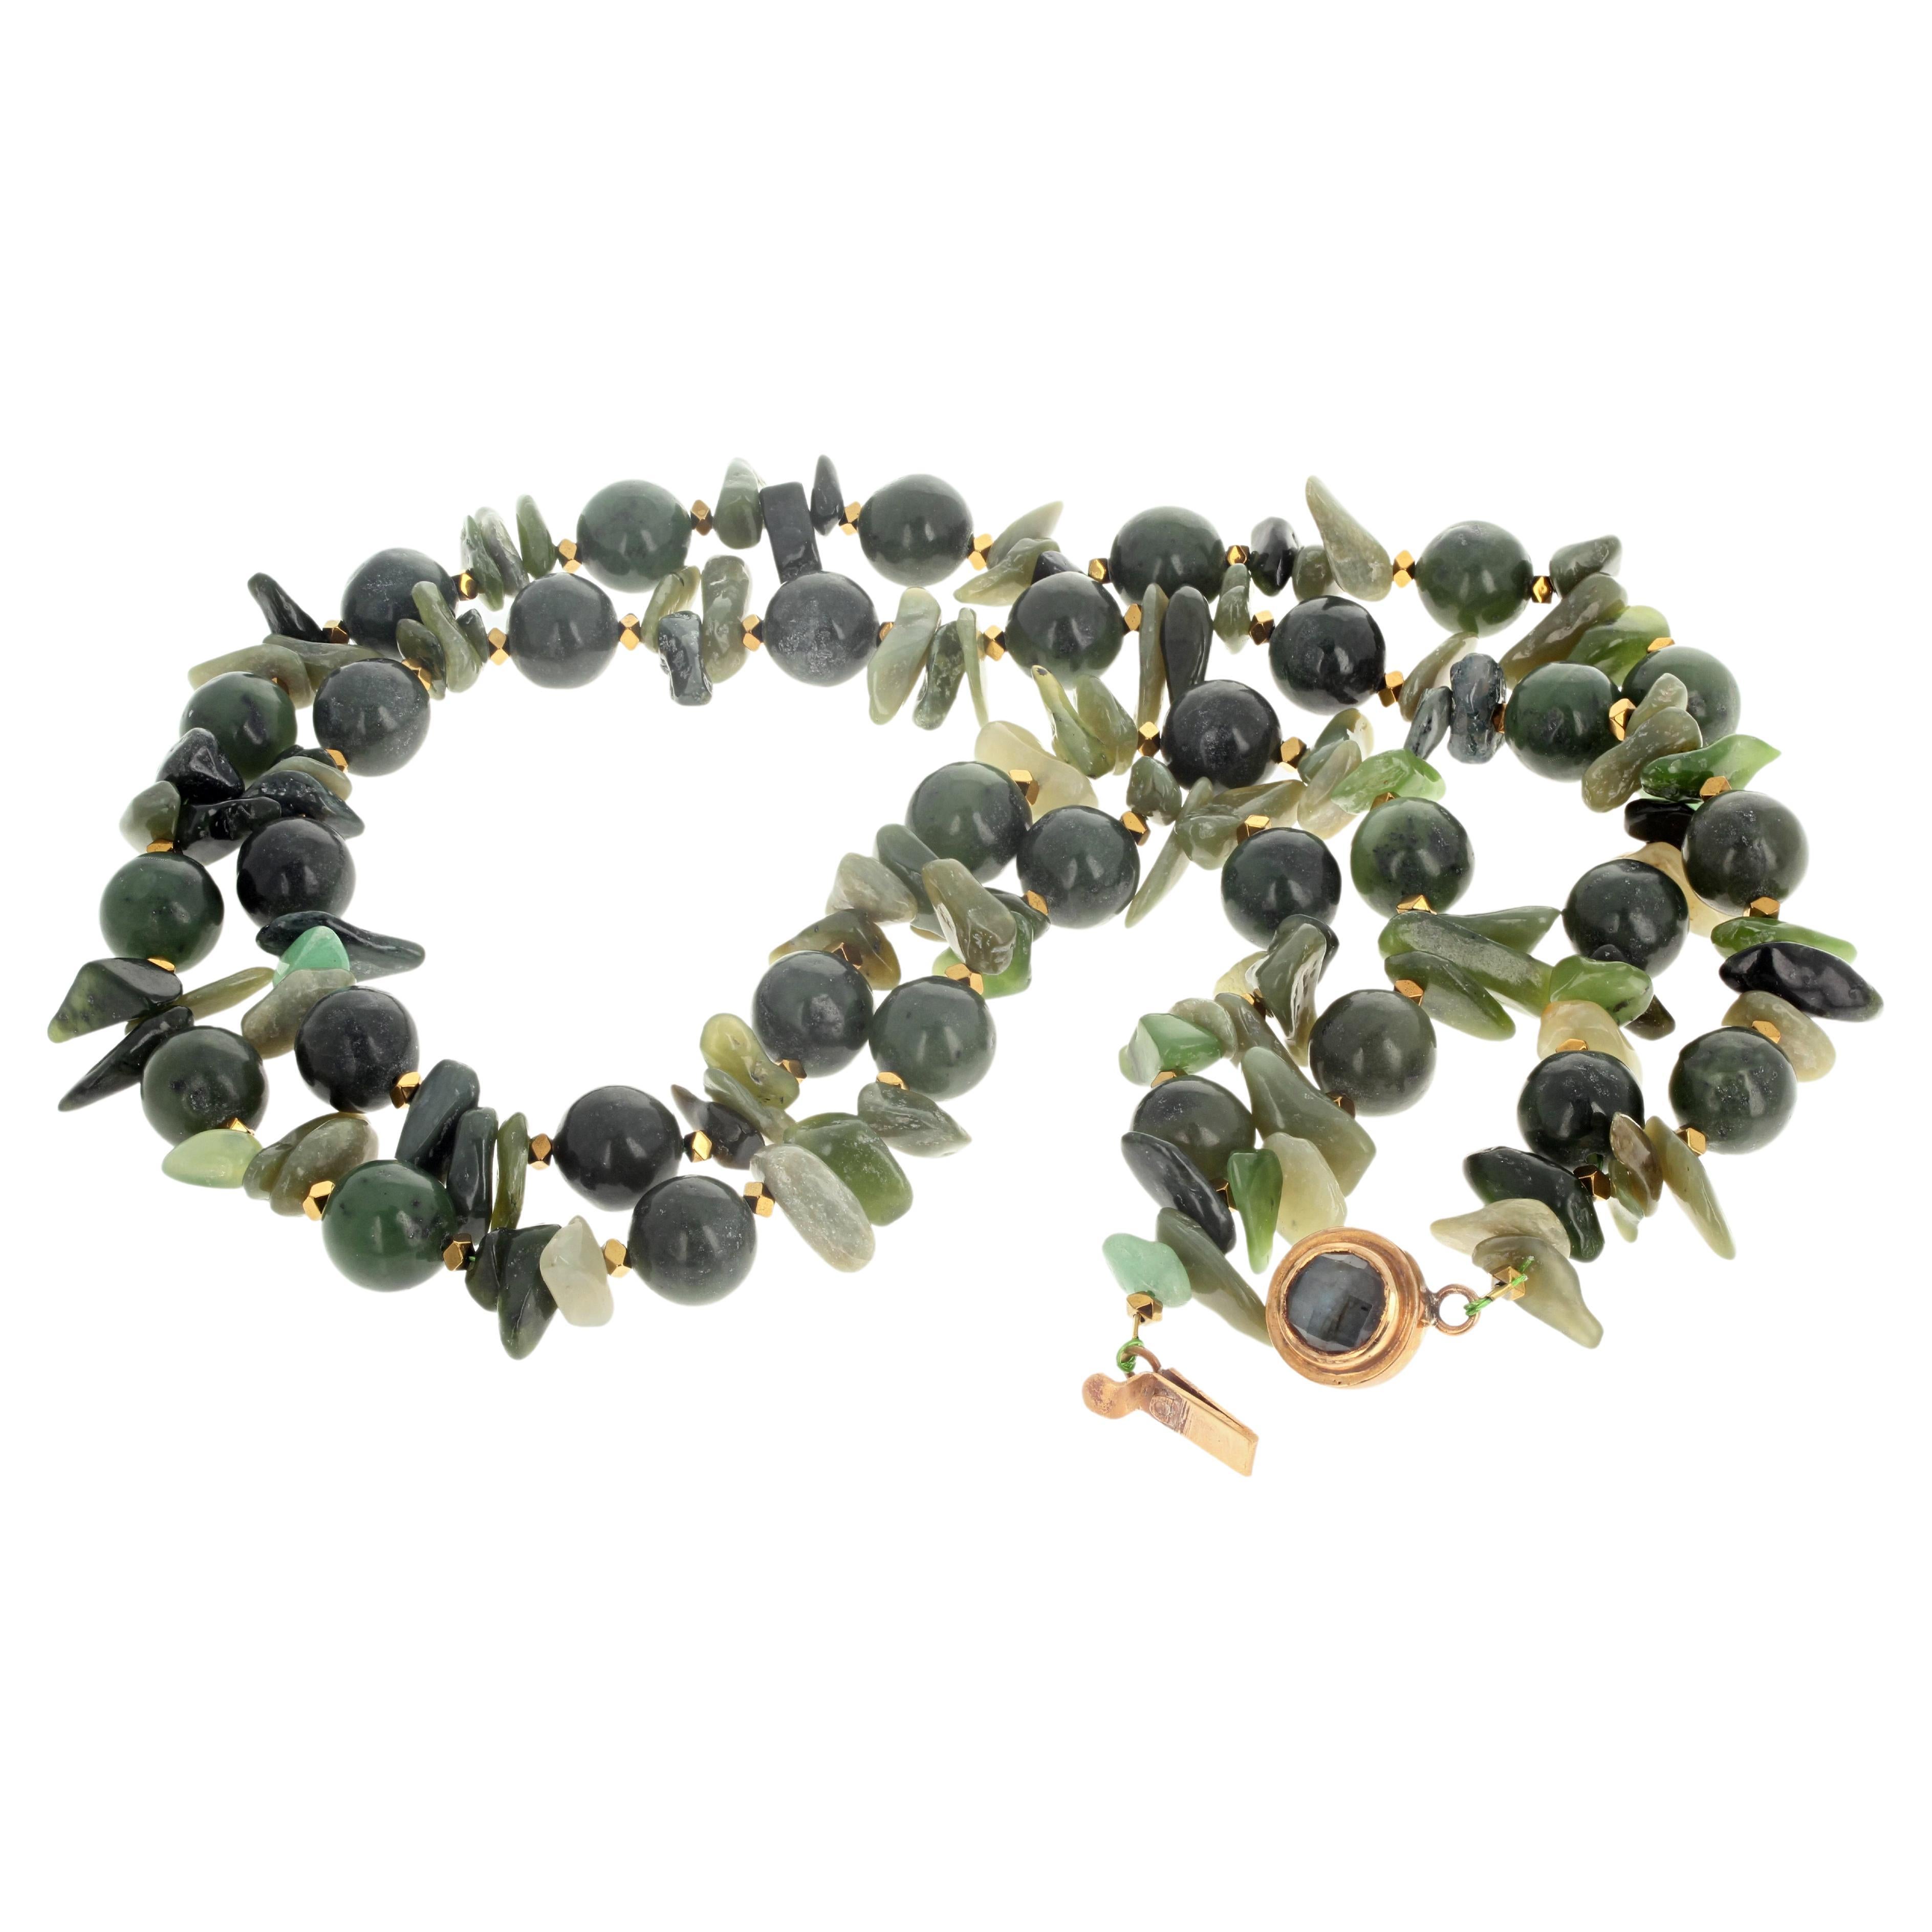 Diese Jade leuchtet prächtig im Licht auf dieser schönen doppelreihigen 19 Zoll langen Halskette.  Die hochglanzpolierte runde Jade ist etwa 12 mm groß.  Die natürlichen Jade-Chips sind alle unterschiedlich groß, wobei der größte ungefähr 18 mm groß